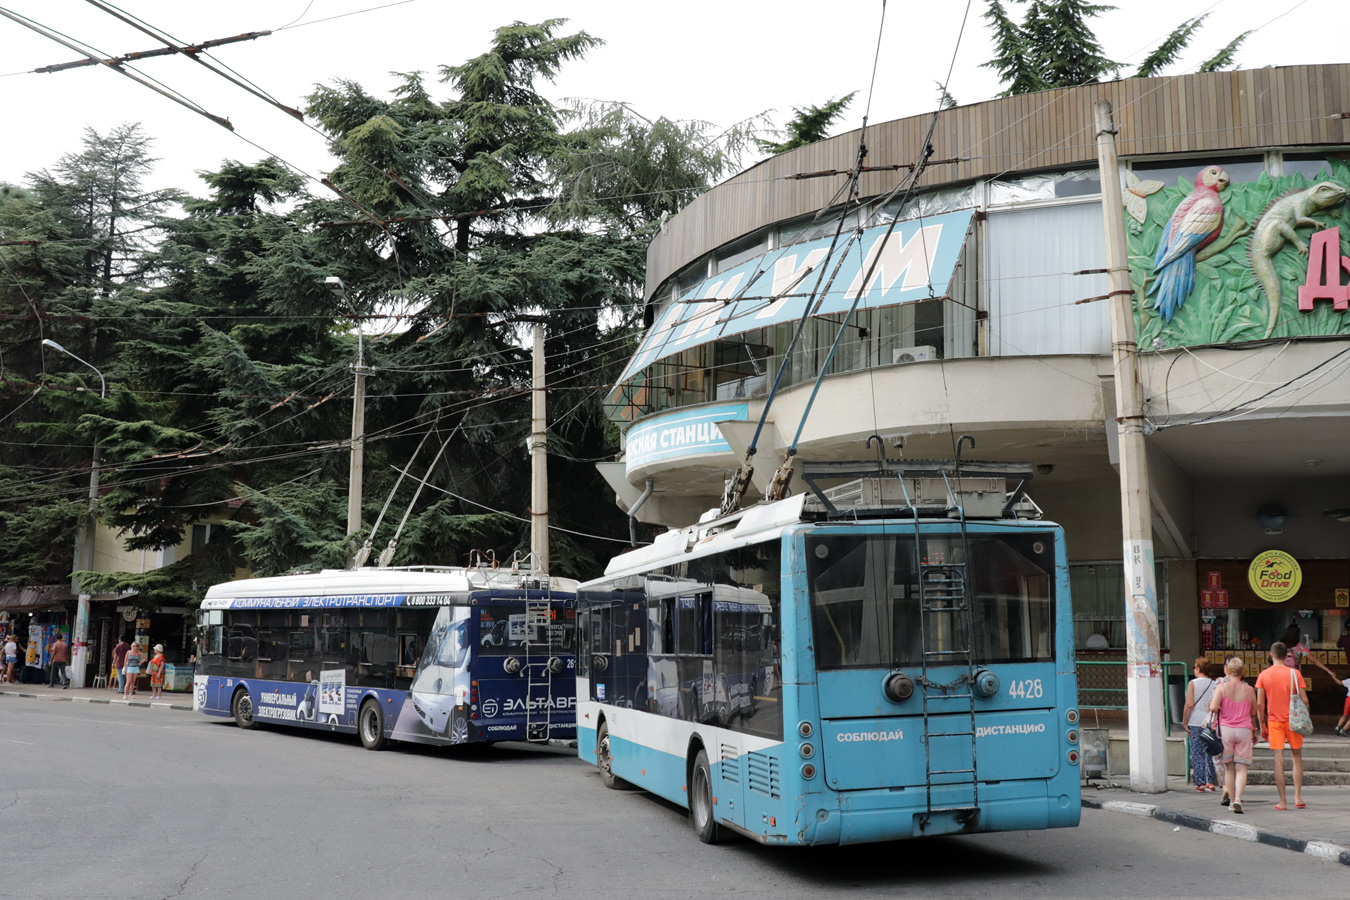 Crimean trolleybus, Bogdan T70115 № 4428